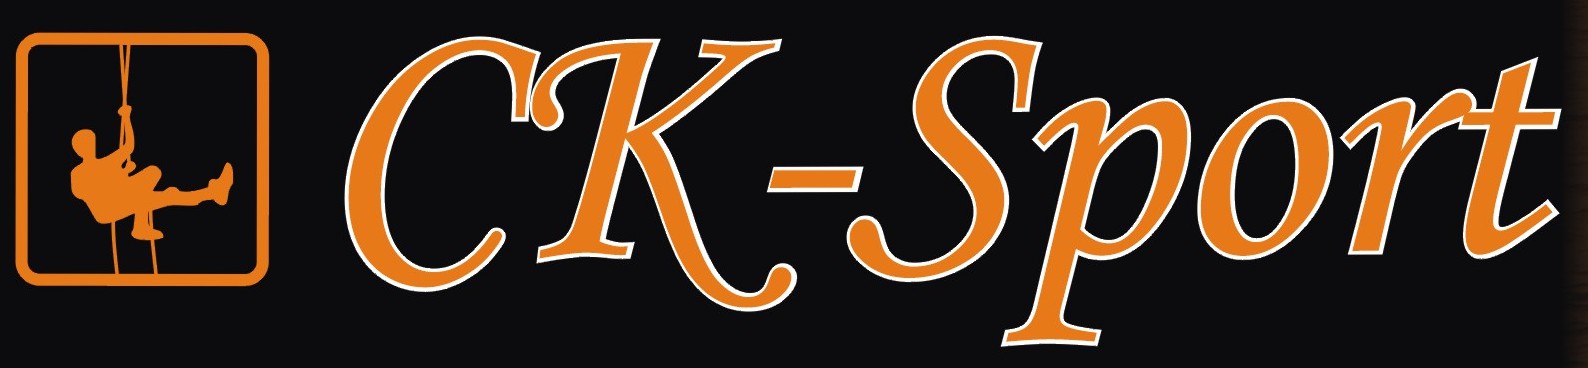 Ck-sport-logo